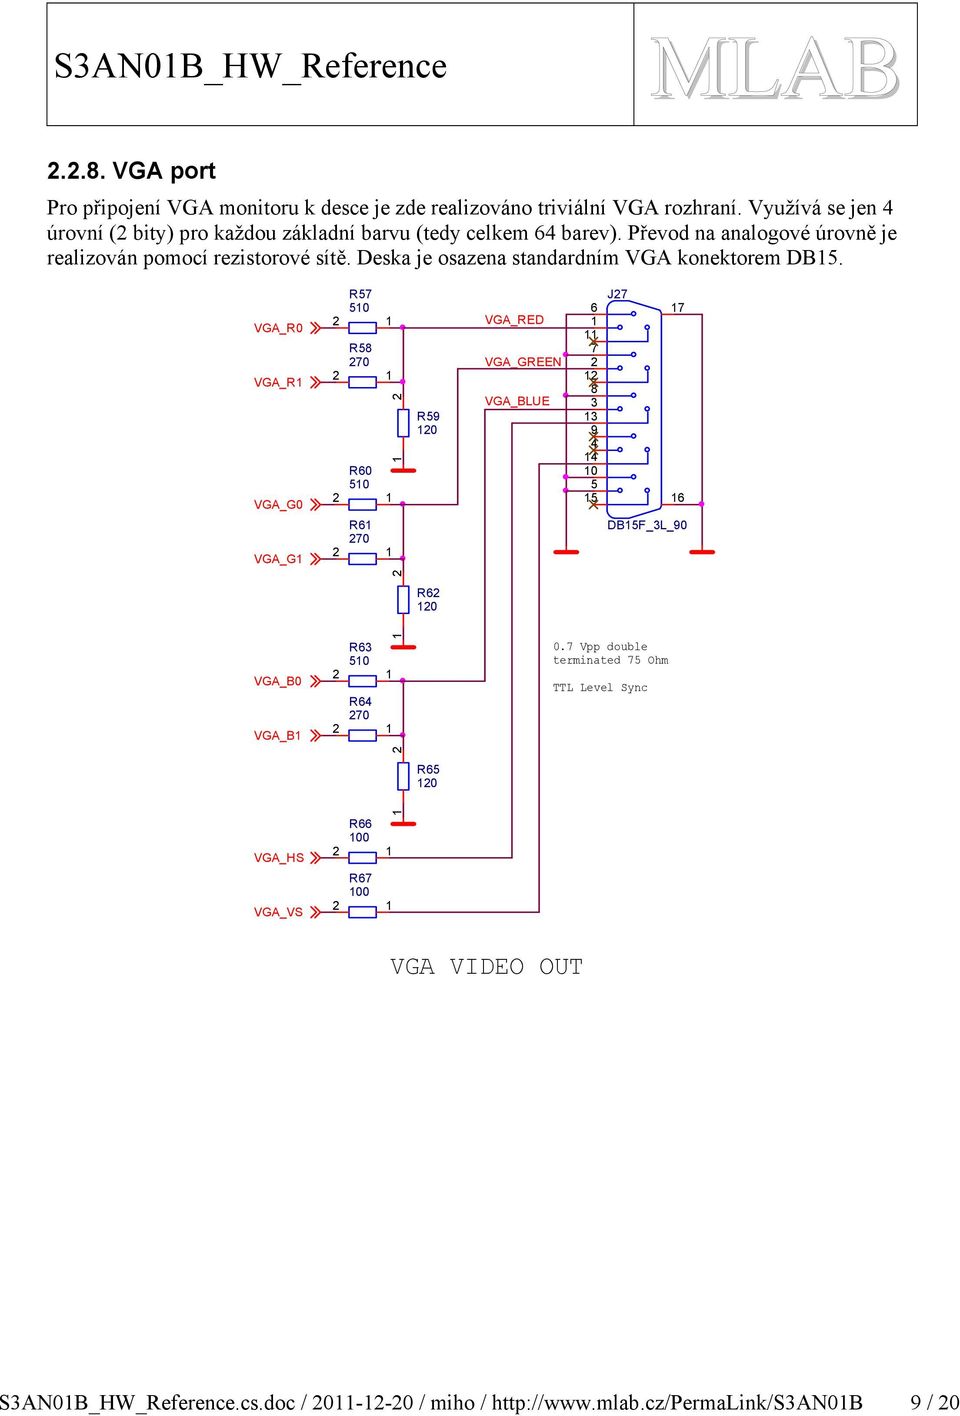 Převod na analogové úrovně je realizován pomocí rezistorové sítě. Deska je osazena standardním VG konektorem D.